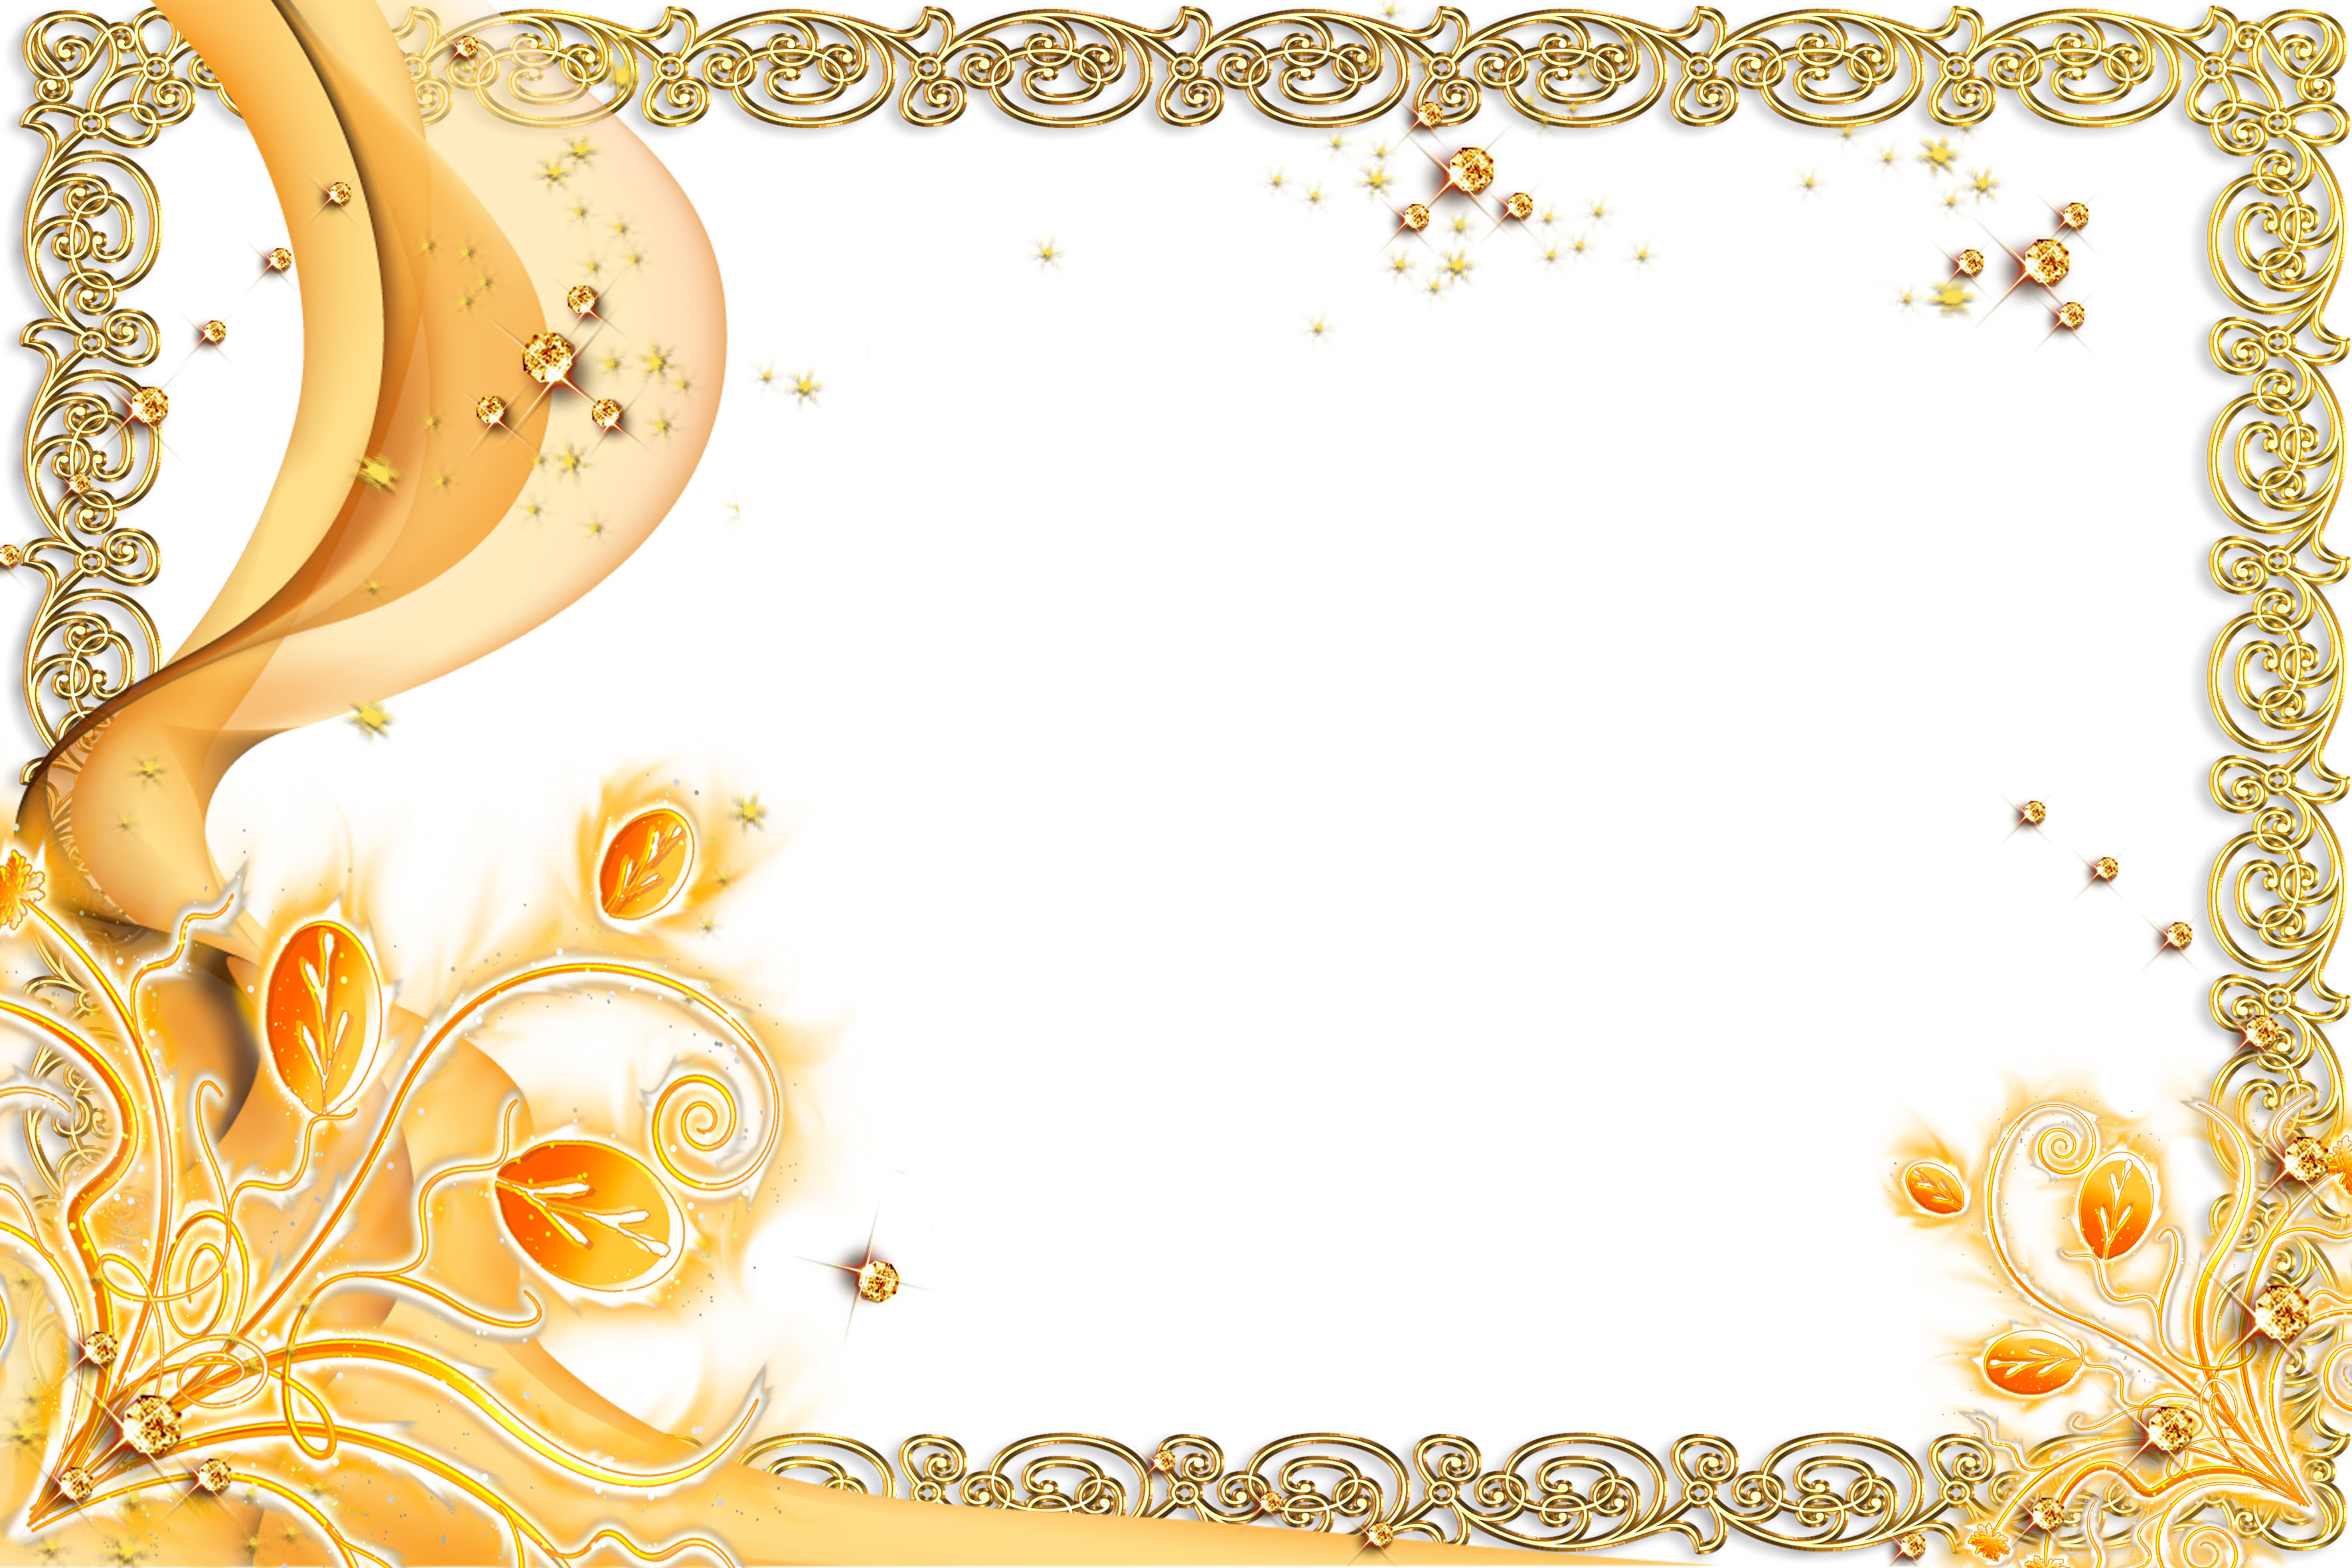 オレンジ色の花のイラスト フリー素材 壁紙 背景no 223 オレンジ ゴールド 宝石